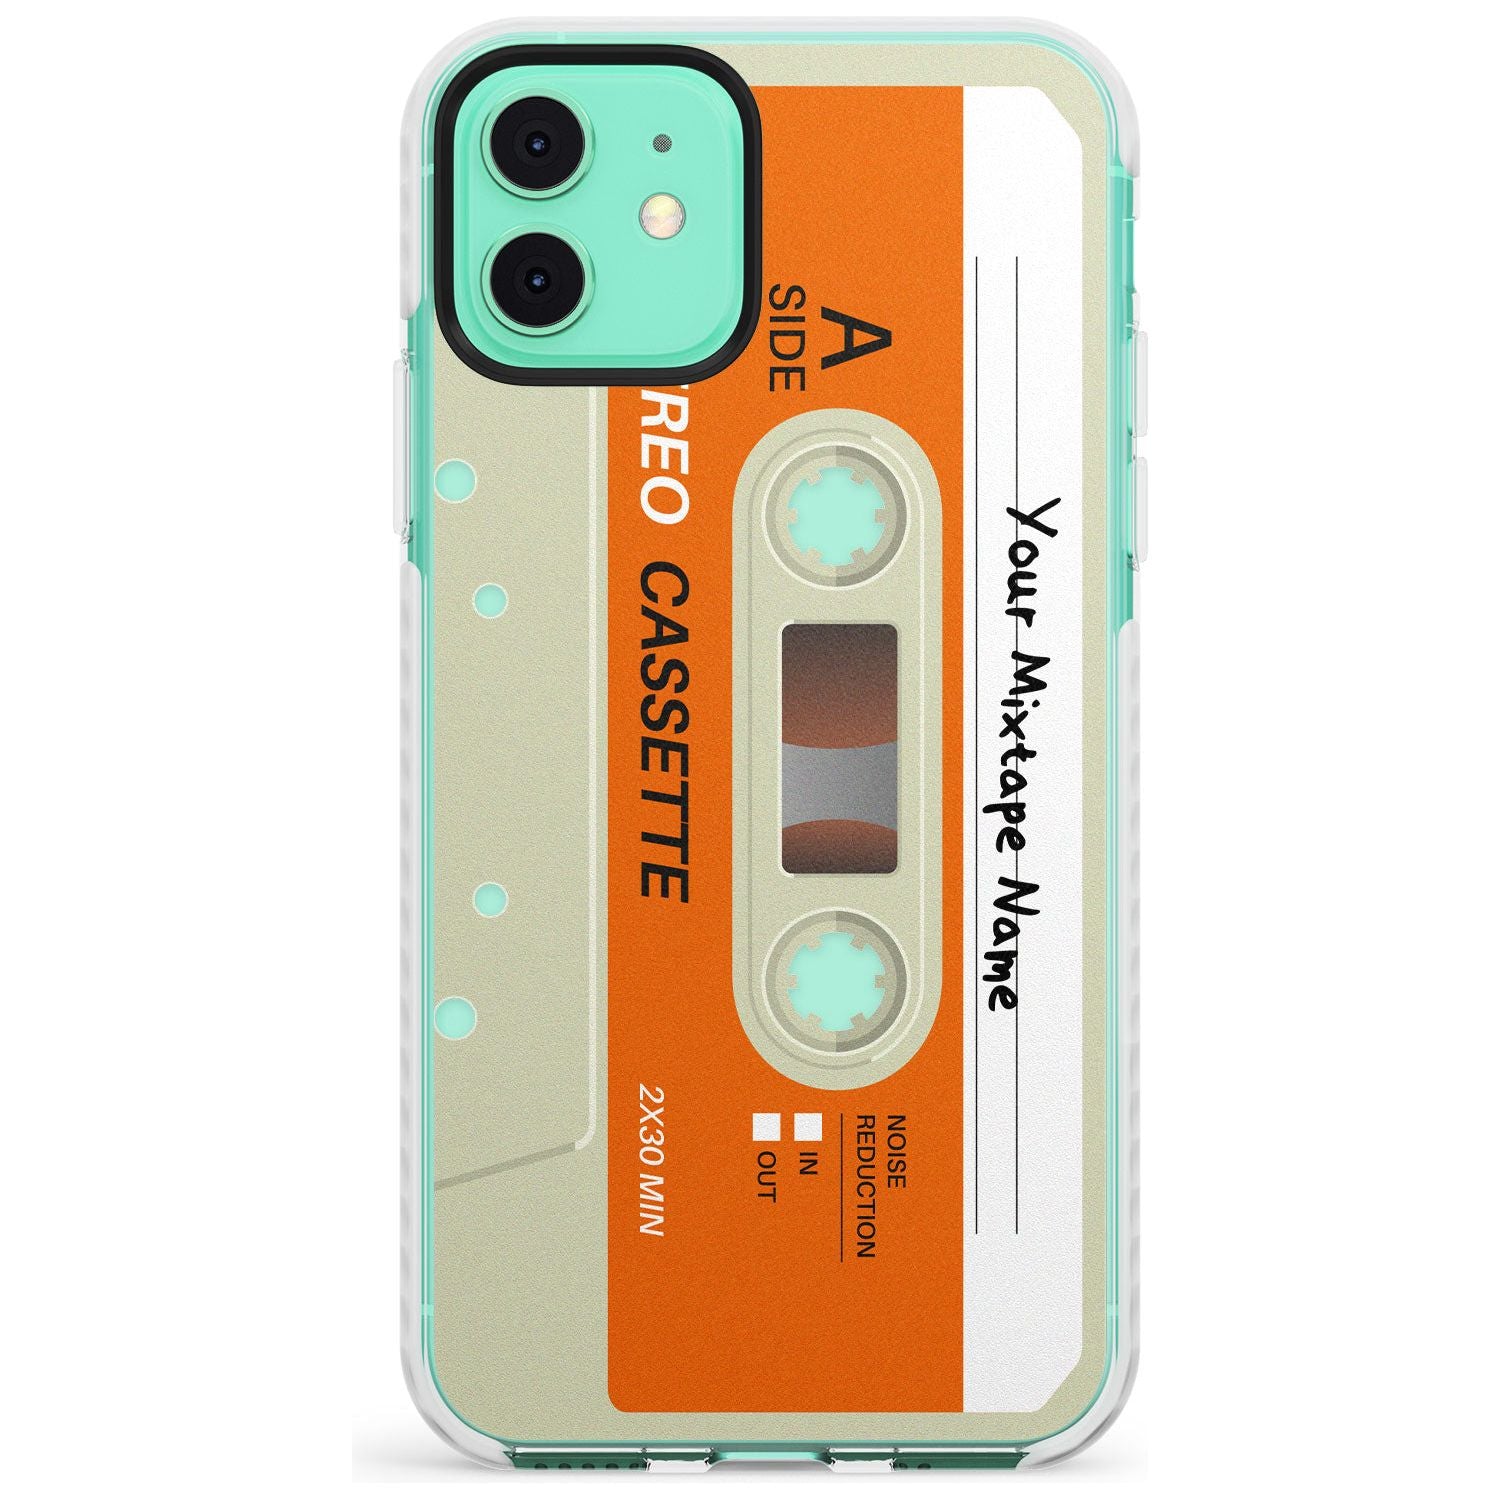 Classic Cassette Slim TPU Phone Case for iPhone 11